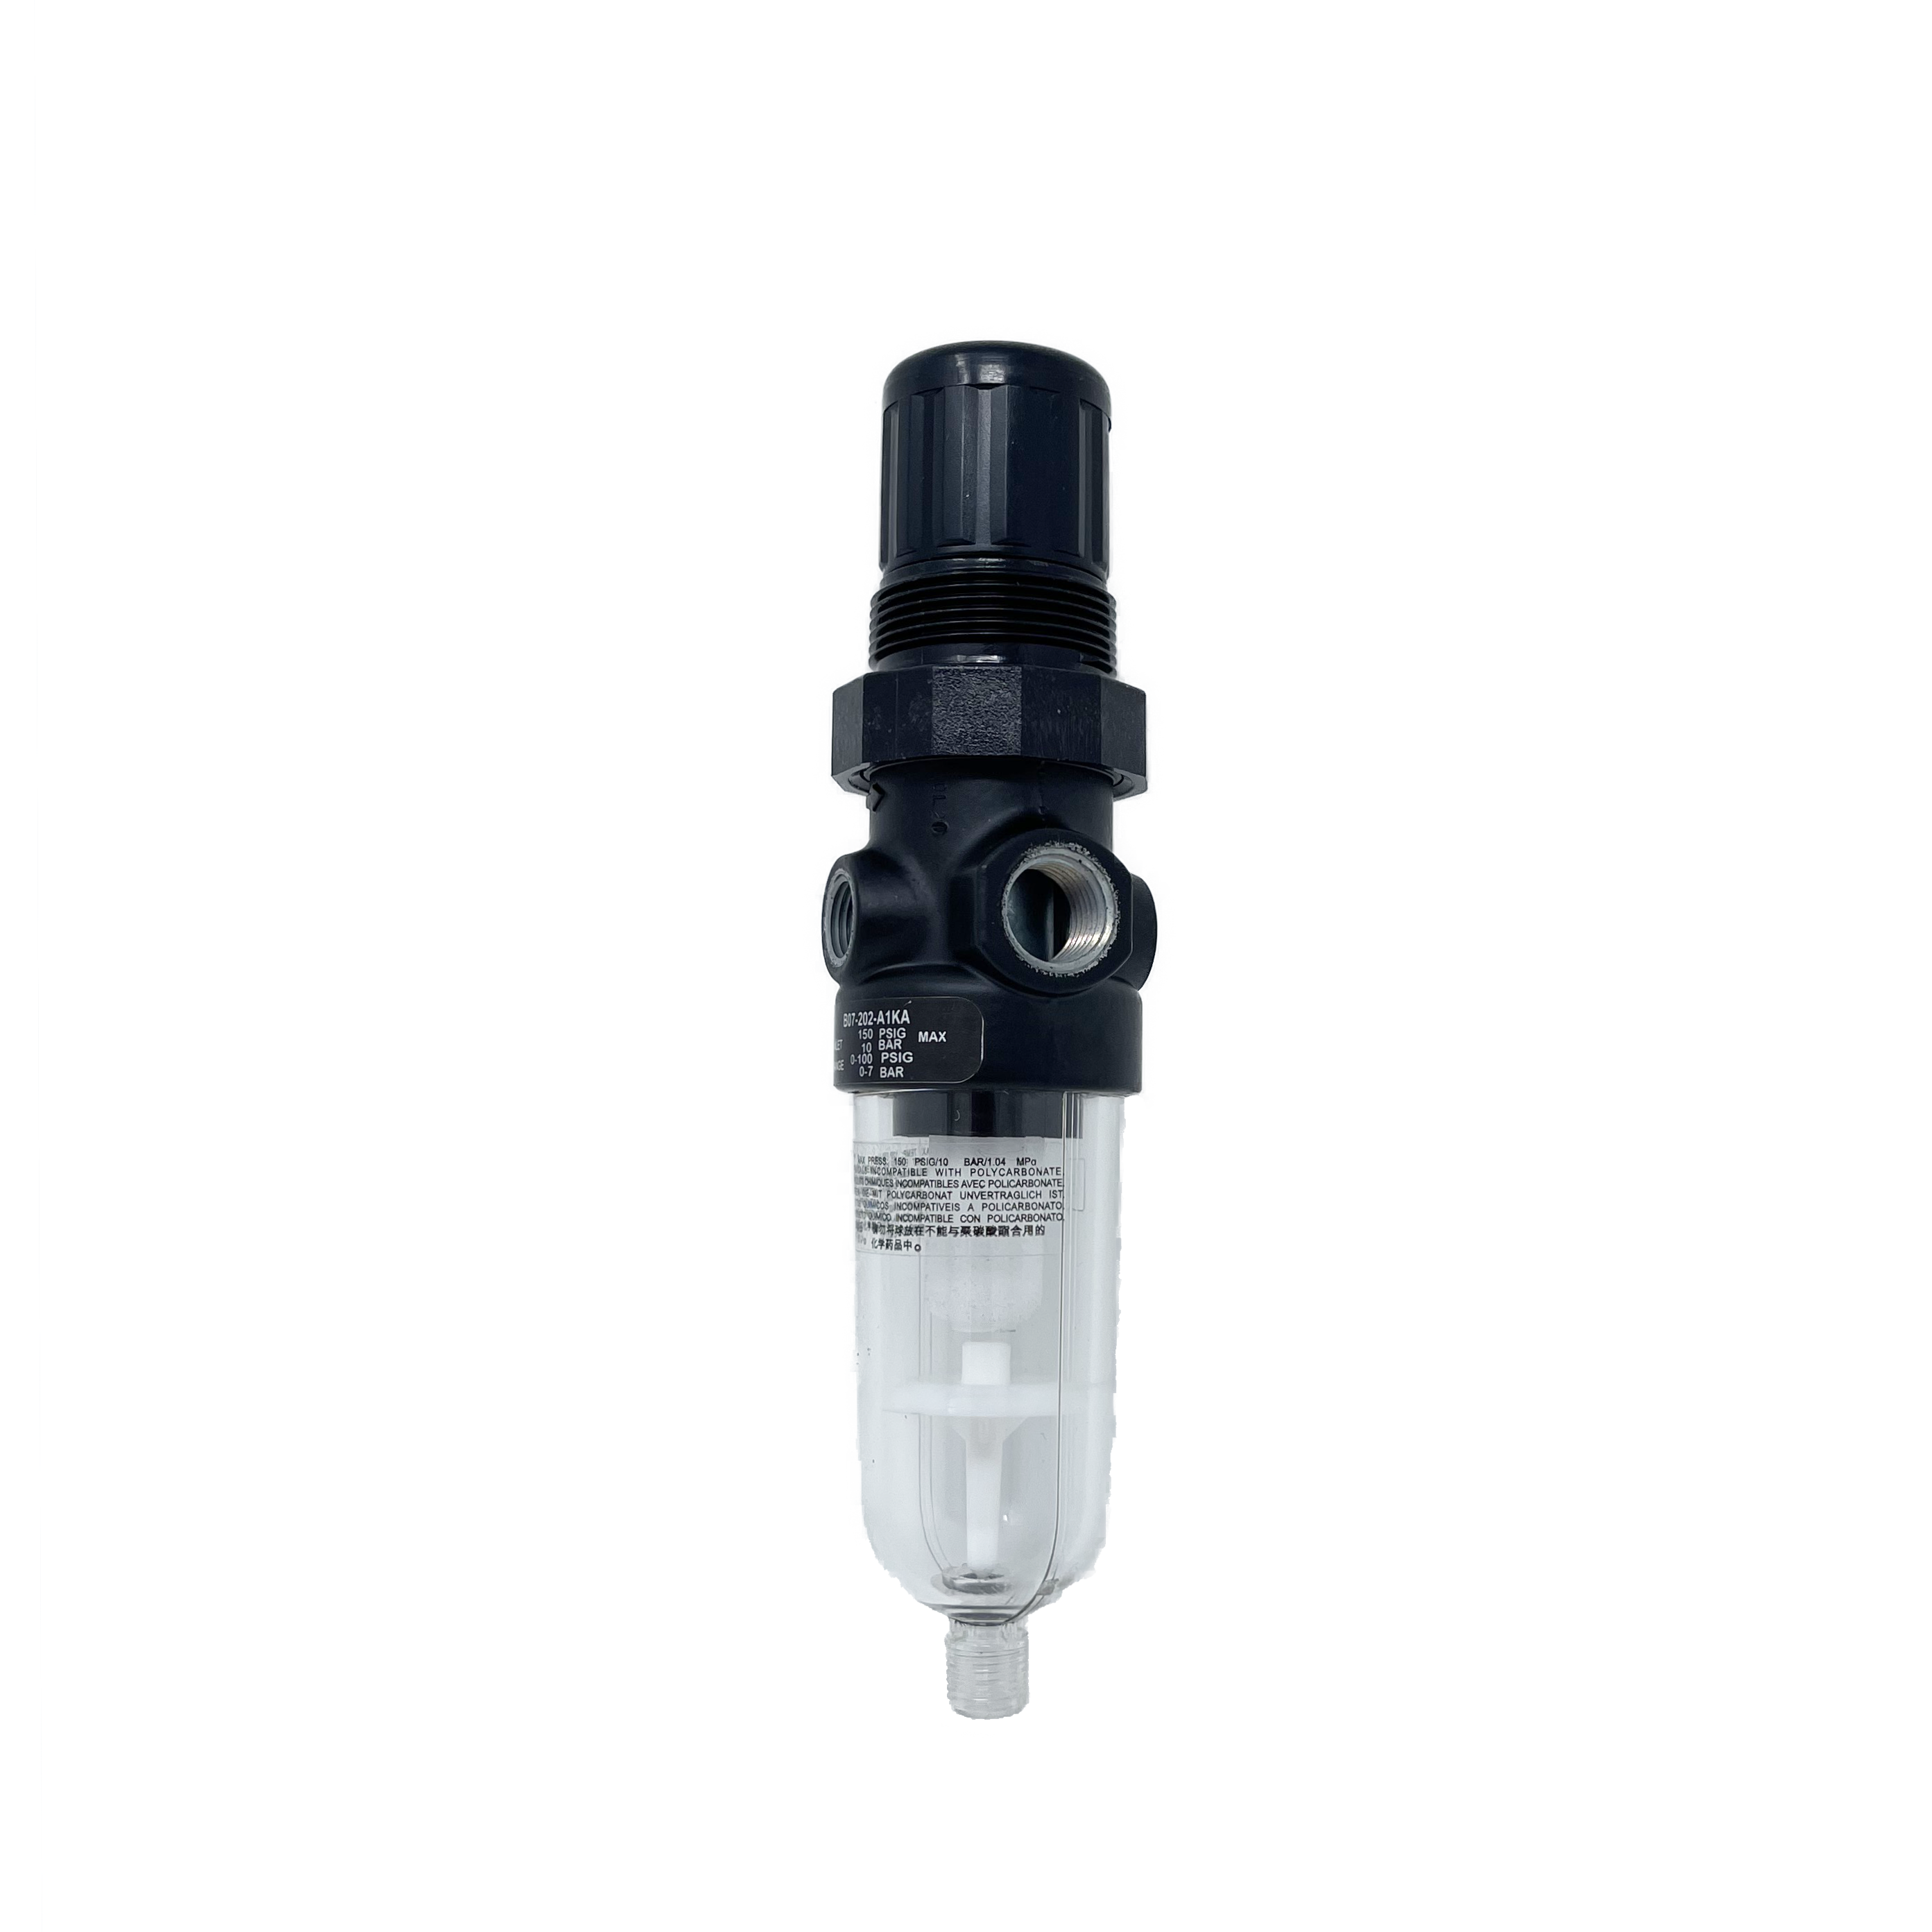 B07-101-M1KA : Norgren B07 miniature filter/regulator, Transparent Bowl, Relieving, Without Gauge, Manual Drain, 5-Micron, 5 to